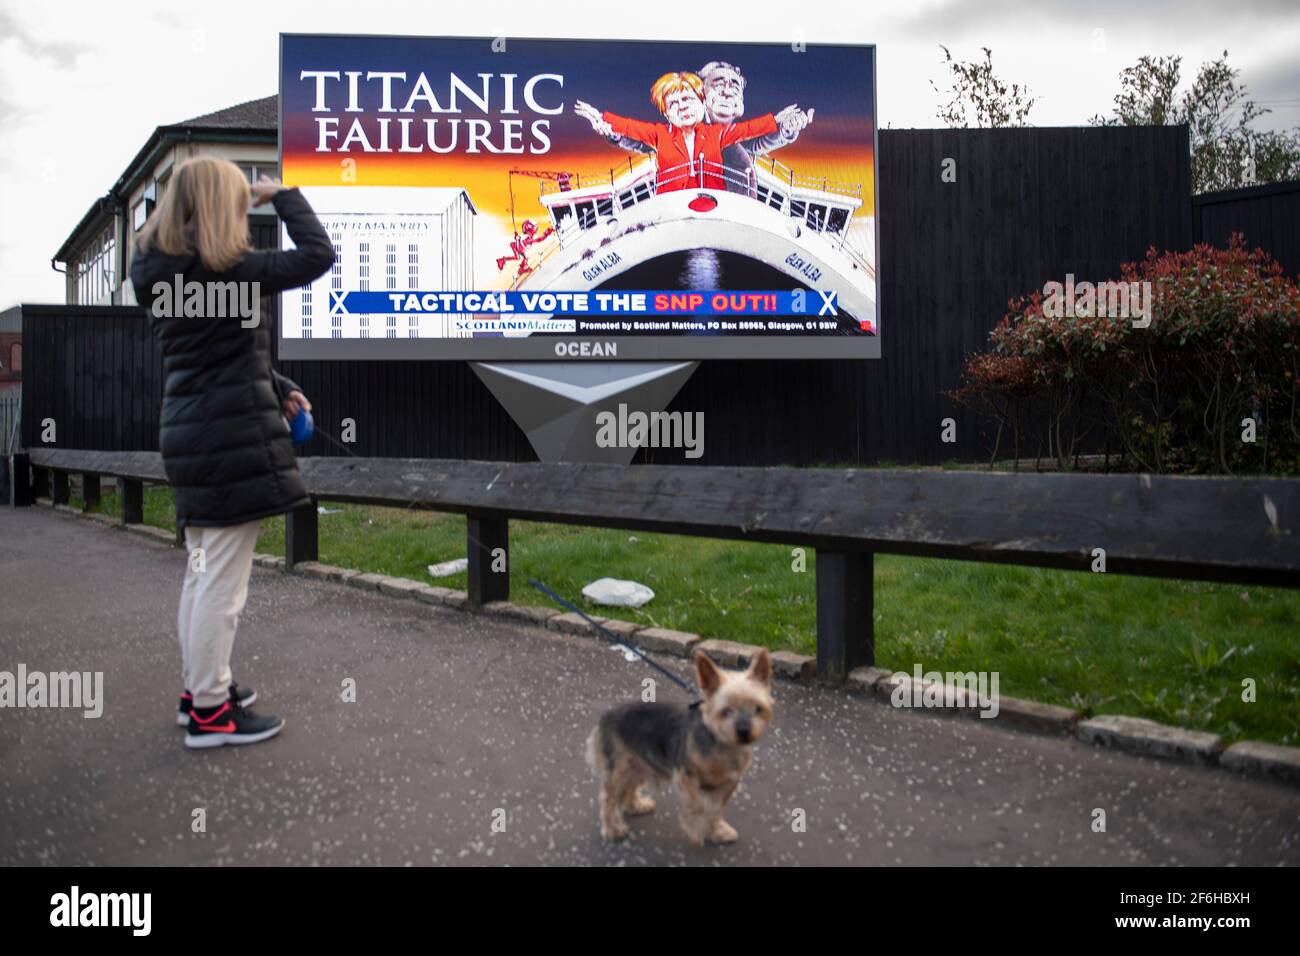 Glasgow, Schottland, Großbritannien. April 2021. IM BILD: Eine riesige elektronische Plakatwand, auf der eine Grafik mit dem Titel „TITANIC FAILURES“ und „TACTICAL VOTEE THE SNP OUT“ abgebildet ist, mit Comic-Figuren von Nicola Sturgeon und Alex Salmond, die die berühmte Szene aus dem Titanic am Bug nachspielen, aber stattdessen auf der Fähre von Glen Alba. Pressemitteilung Link: https://www.scotlandmatters.co.uk/titanicfailurebillboard/ Artikel Link: https://www.bbc.co.uk/news/amp/uk-scotland-glasgow-west-56579158?  twitter impression=true&s=03 Quelle: Colin Fisher/Alamy Live News. Stockfoto